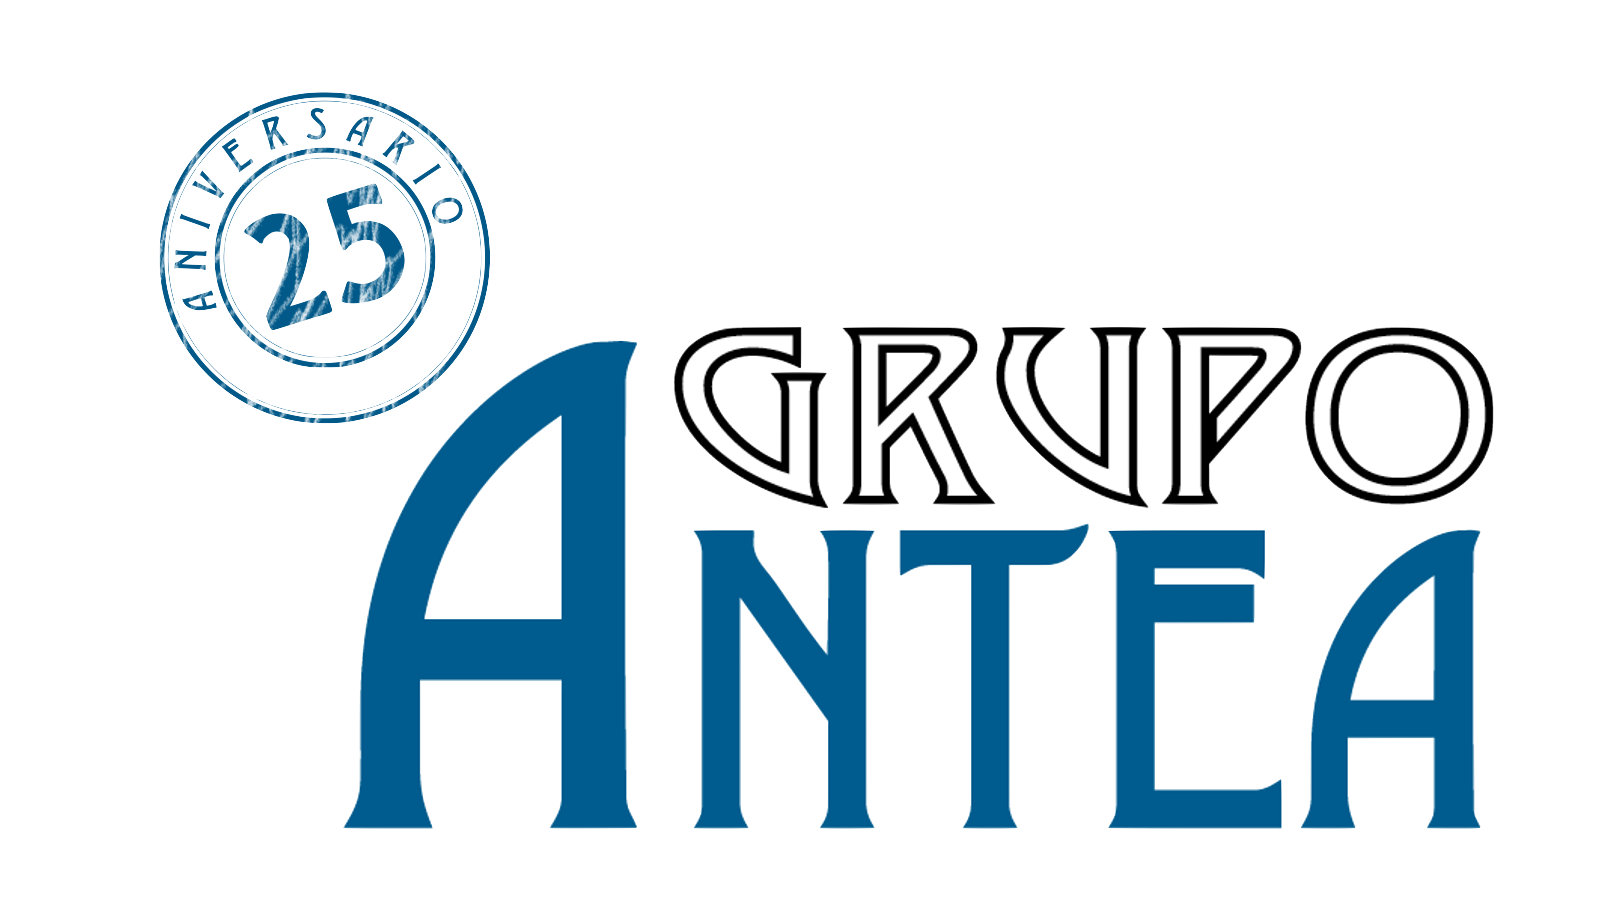 Grupo Antea